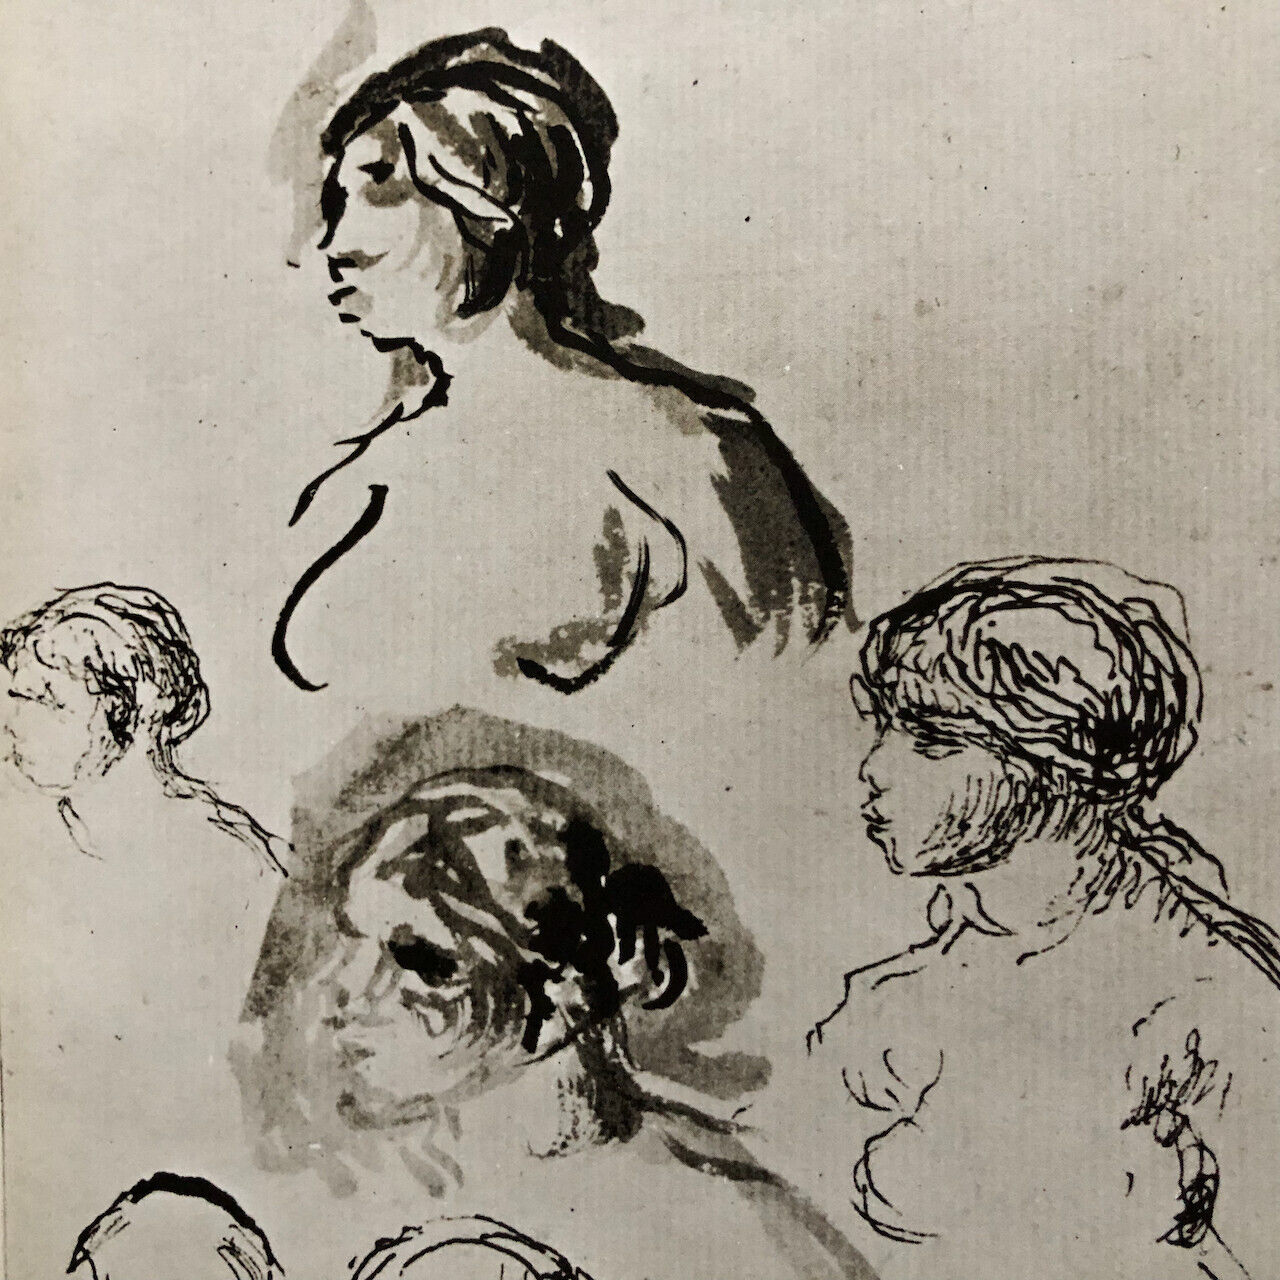 Paul Renoir — 125 dessins inédits de Pierre Auguste Renoir — é.o. signée — 1971.